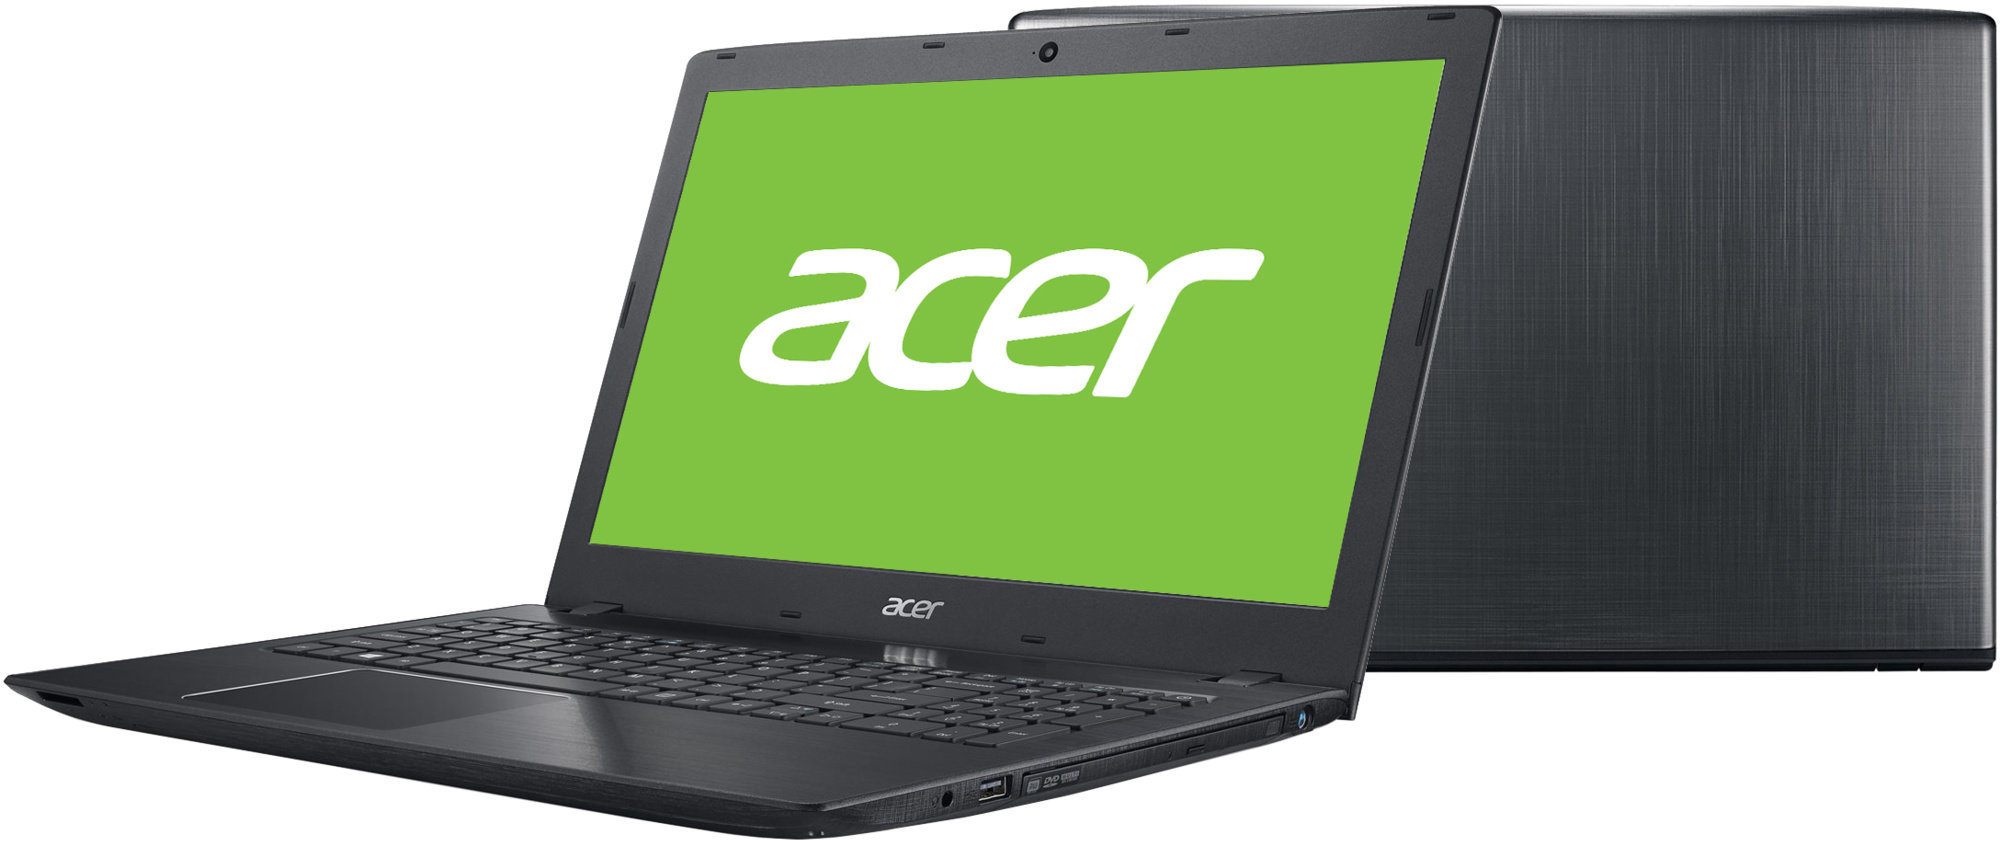 Acer a315-21g. Acer Aspire 3 a315-41g. Acer Aspire e15 e5-575g. Acer Aspire e 17.